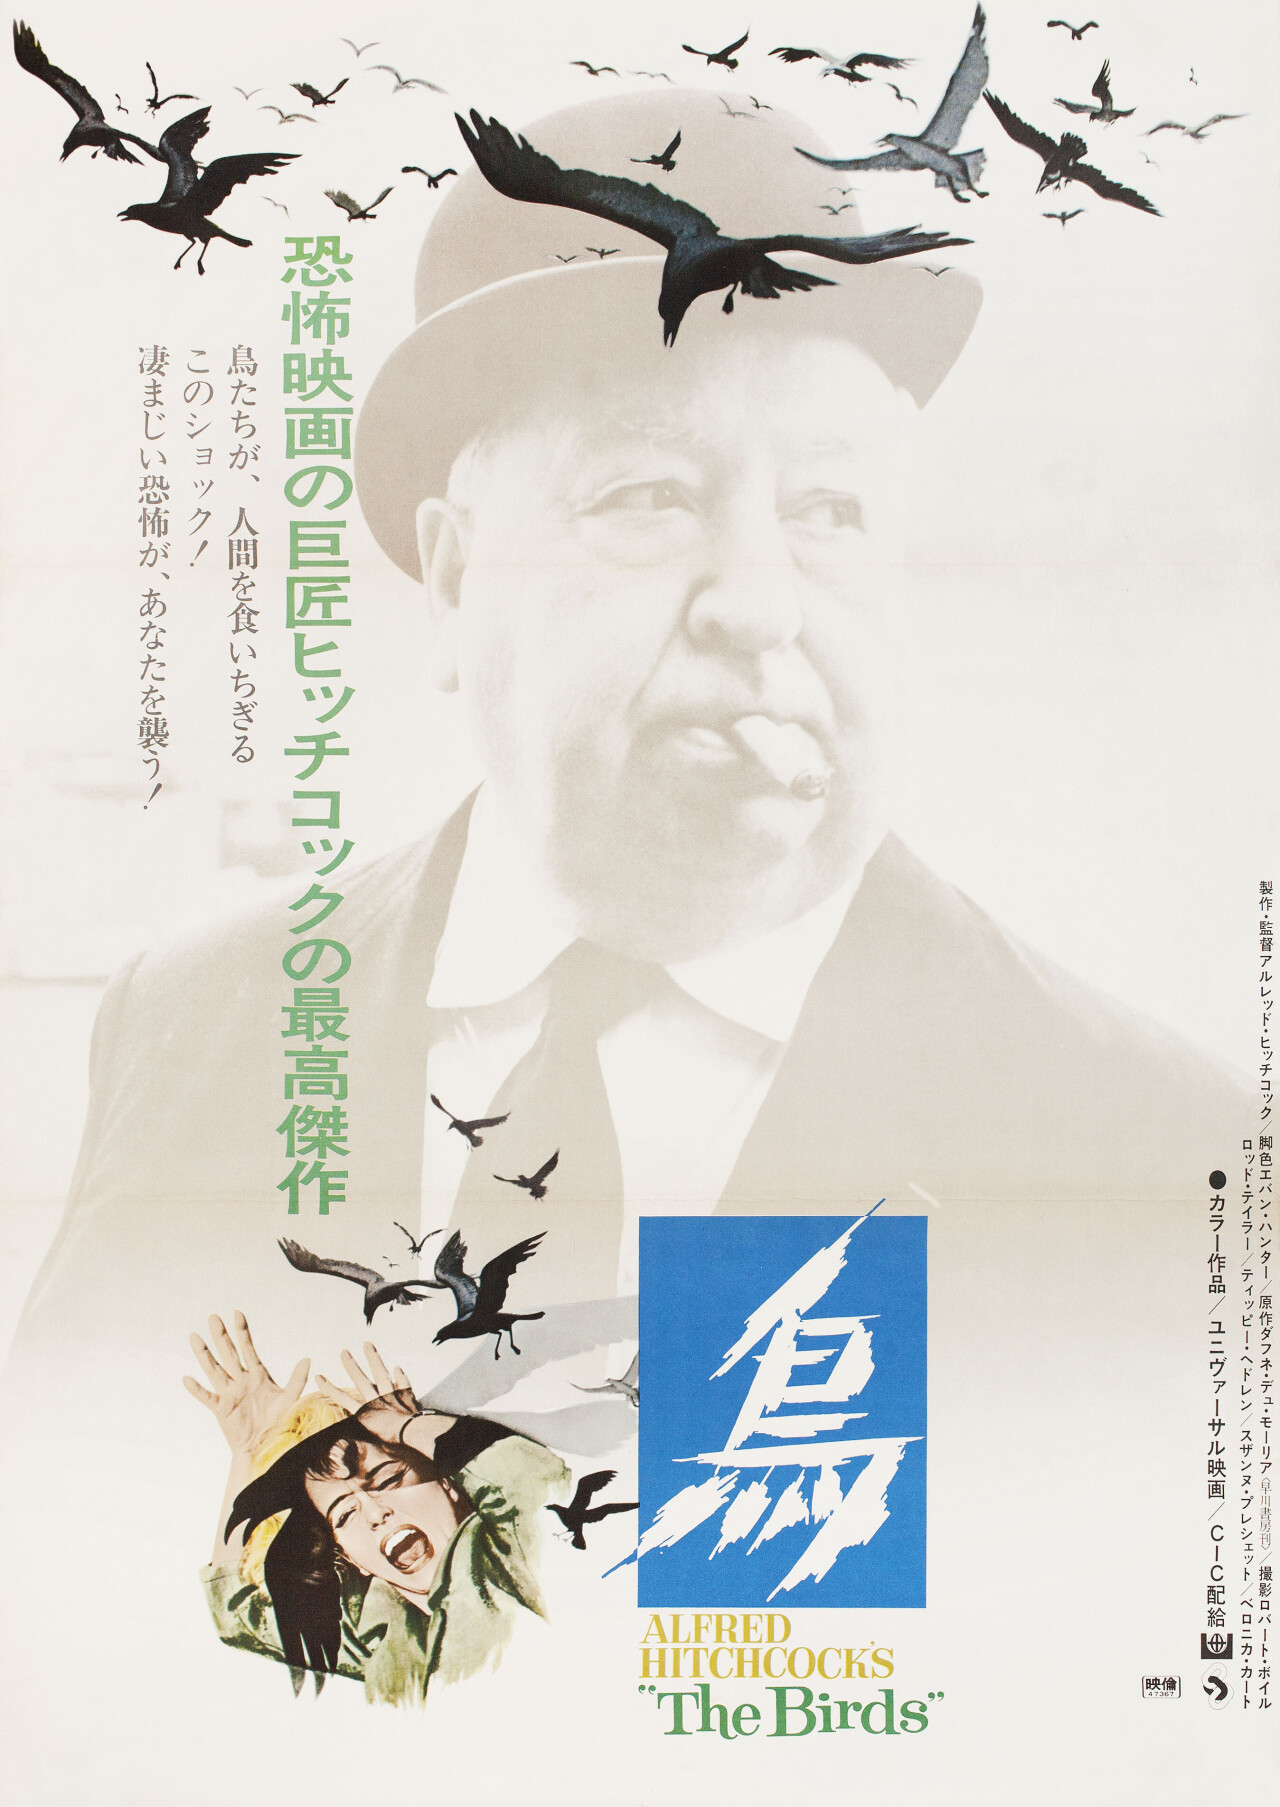 Птицы (The Birds, 1963), режиссёр Альфред Хичкок, японский постер к фильму (ужасы, 1972 год) (1)